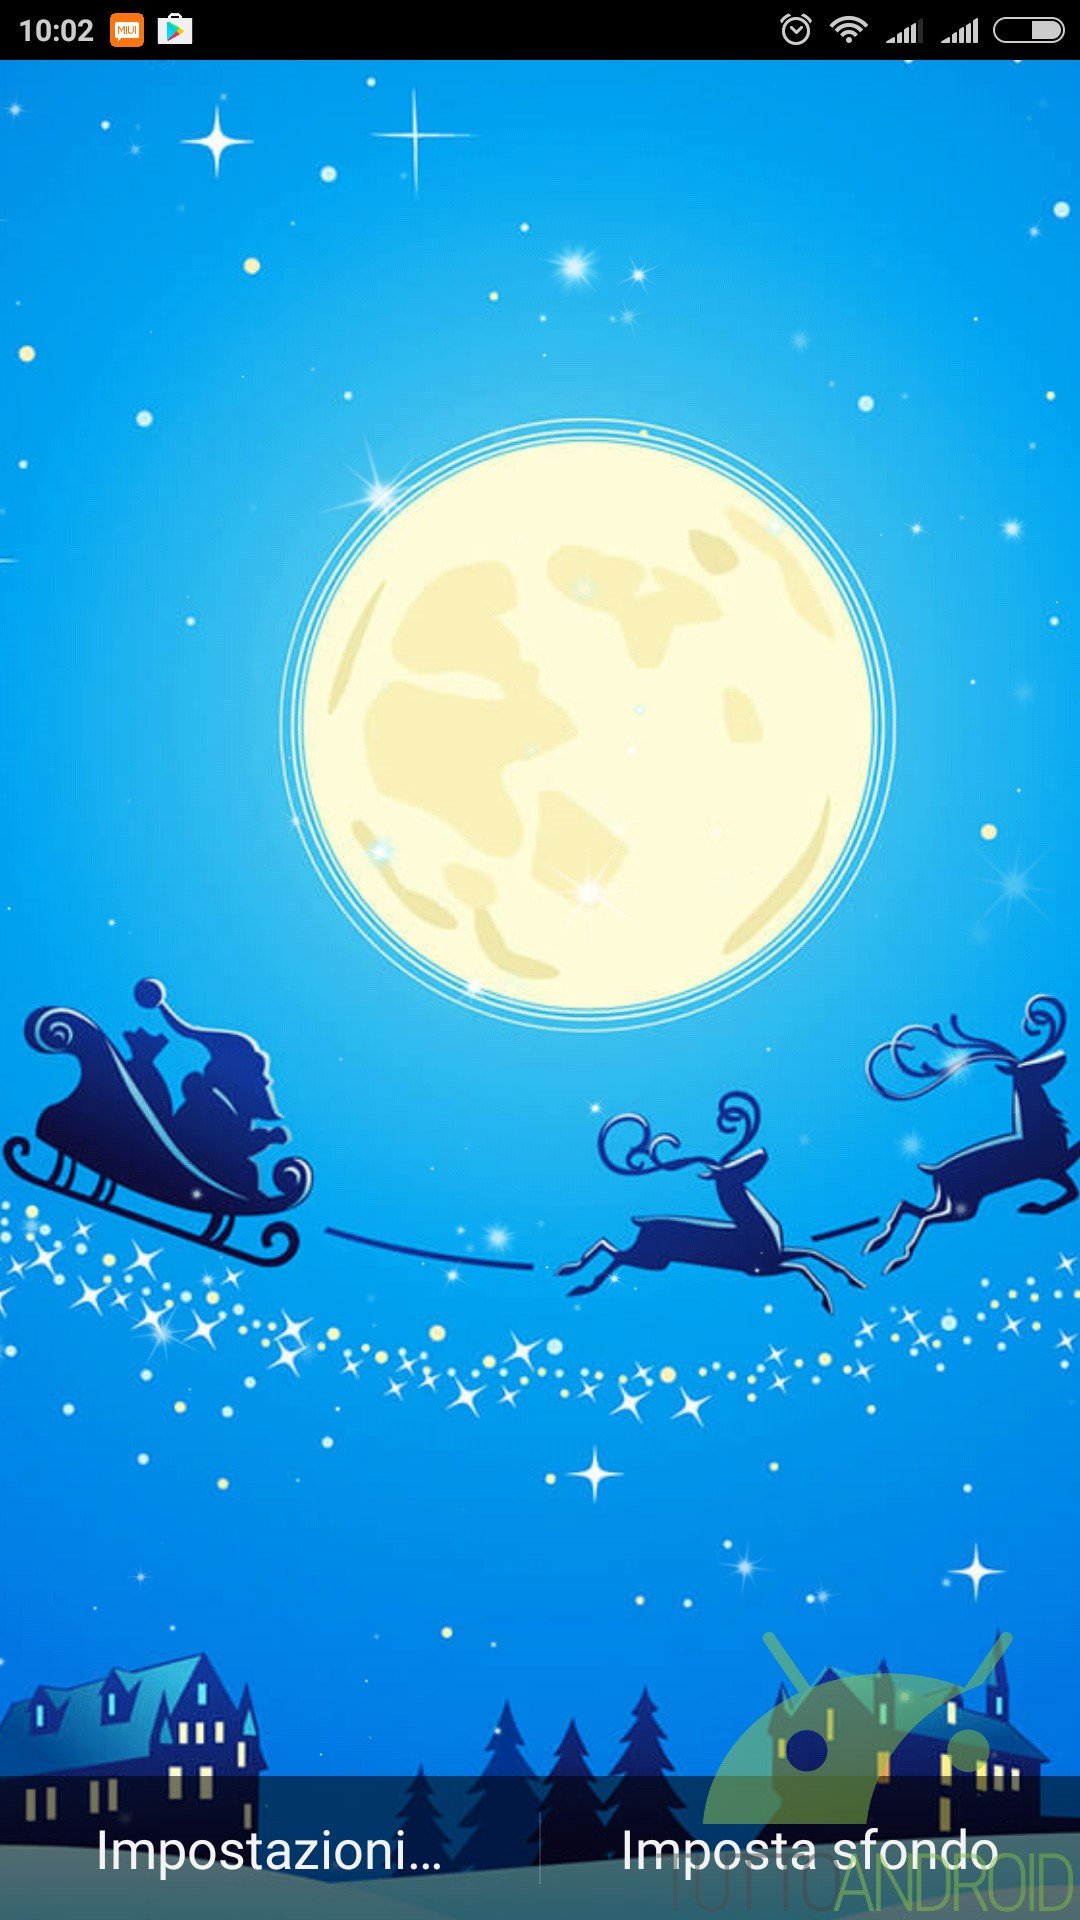 Sfondi Animati Natalizi Android.Notte Di Natale Sfondi Animati Offre Live Wallpaper Di Qualita Per Le Prossime Festivita